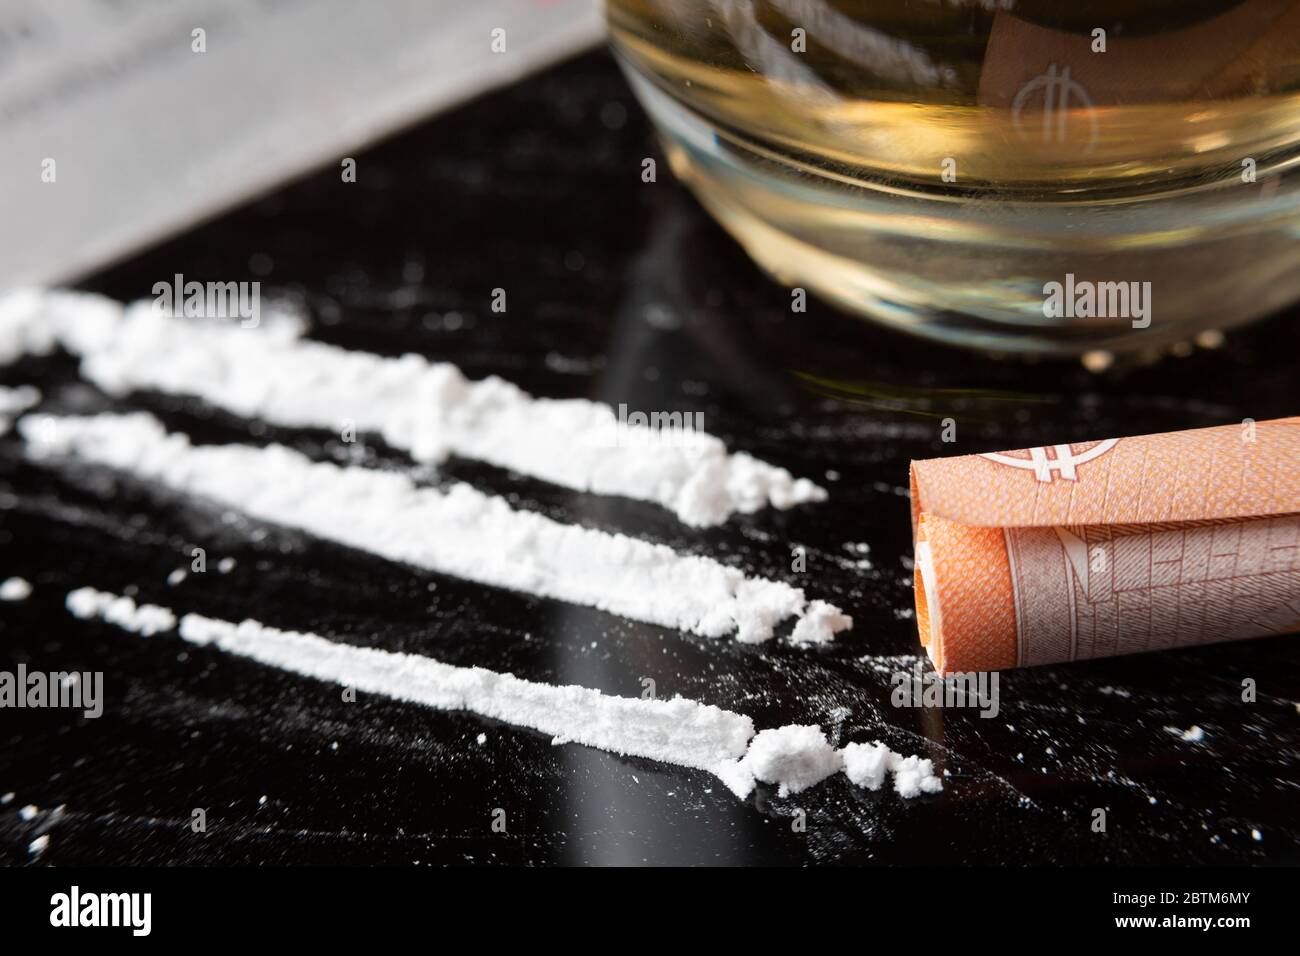 Linee di cocaina preparate su un tavolo e una banconota arrotolata pronta per essere sniffata Foto Stock